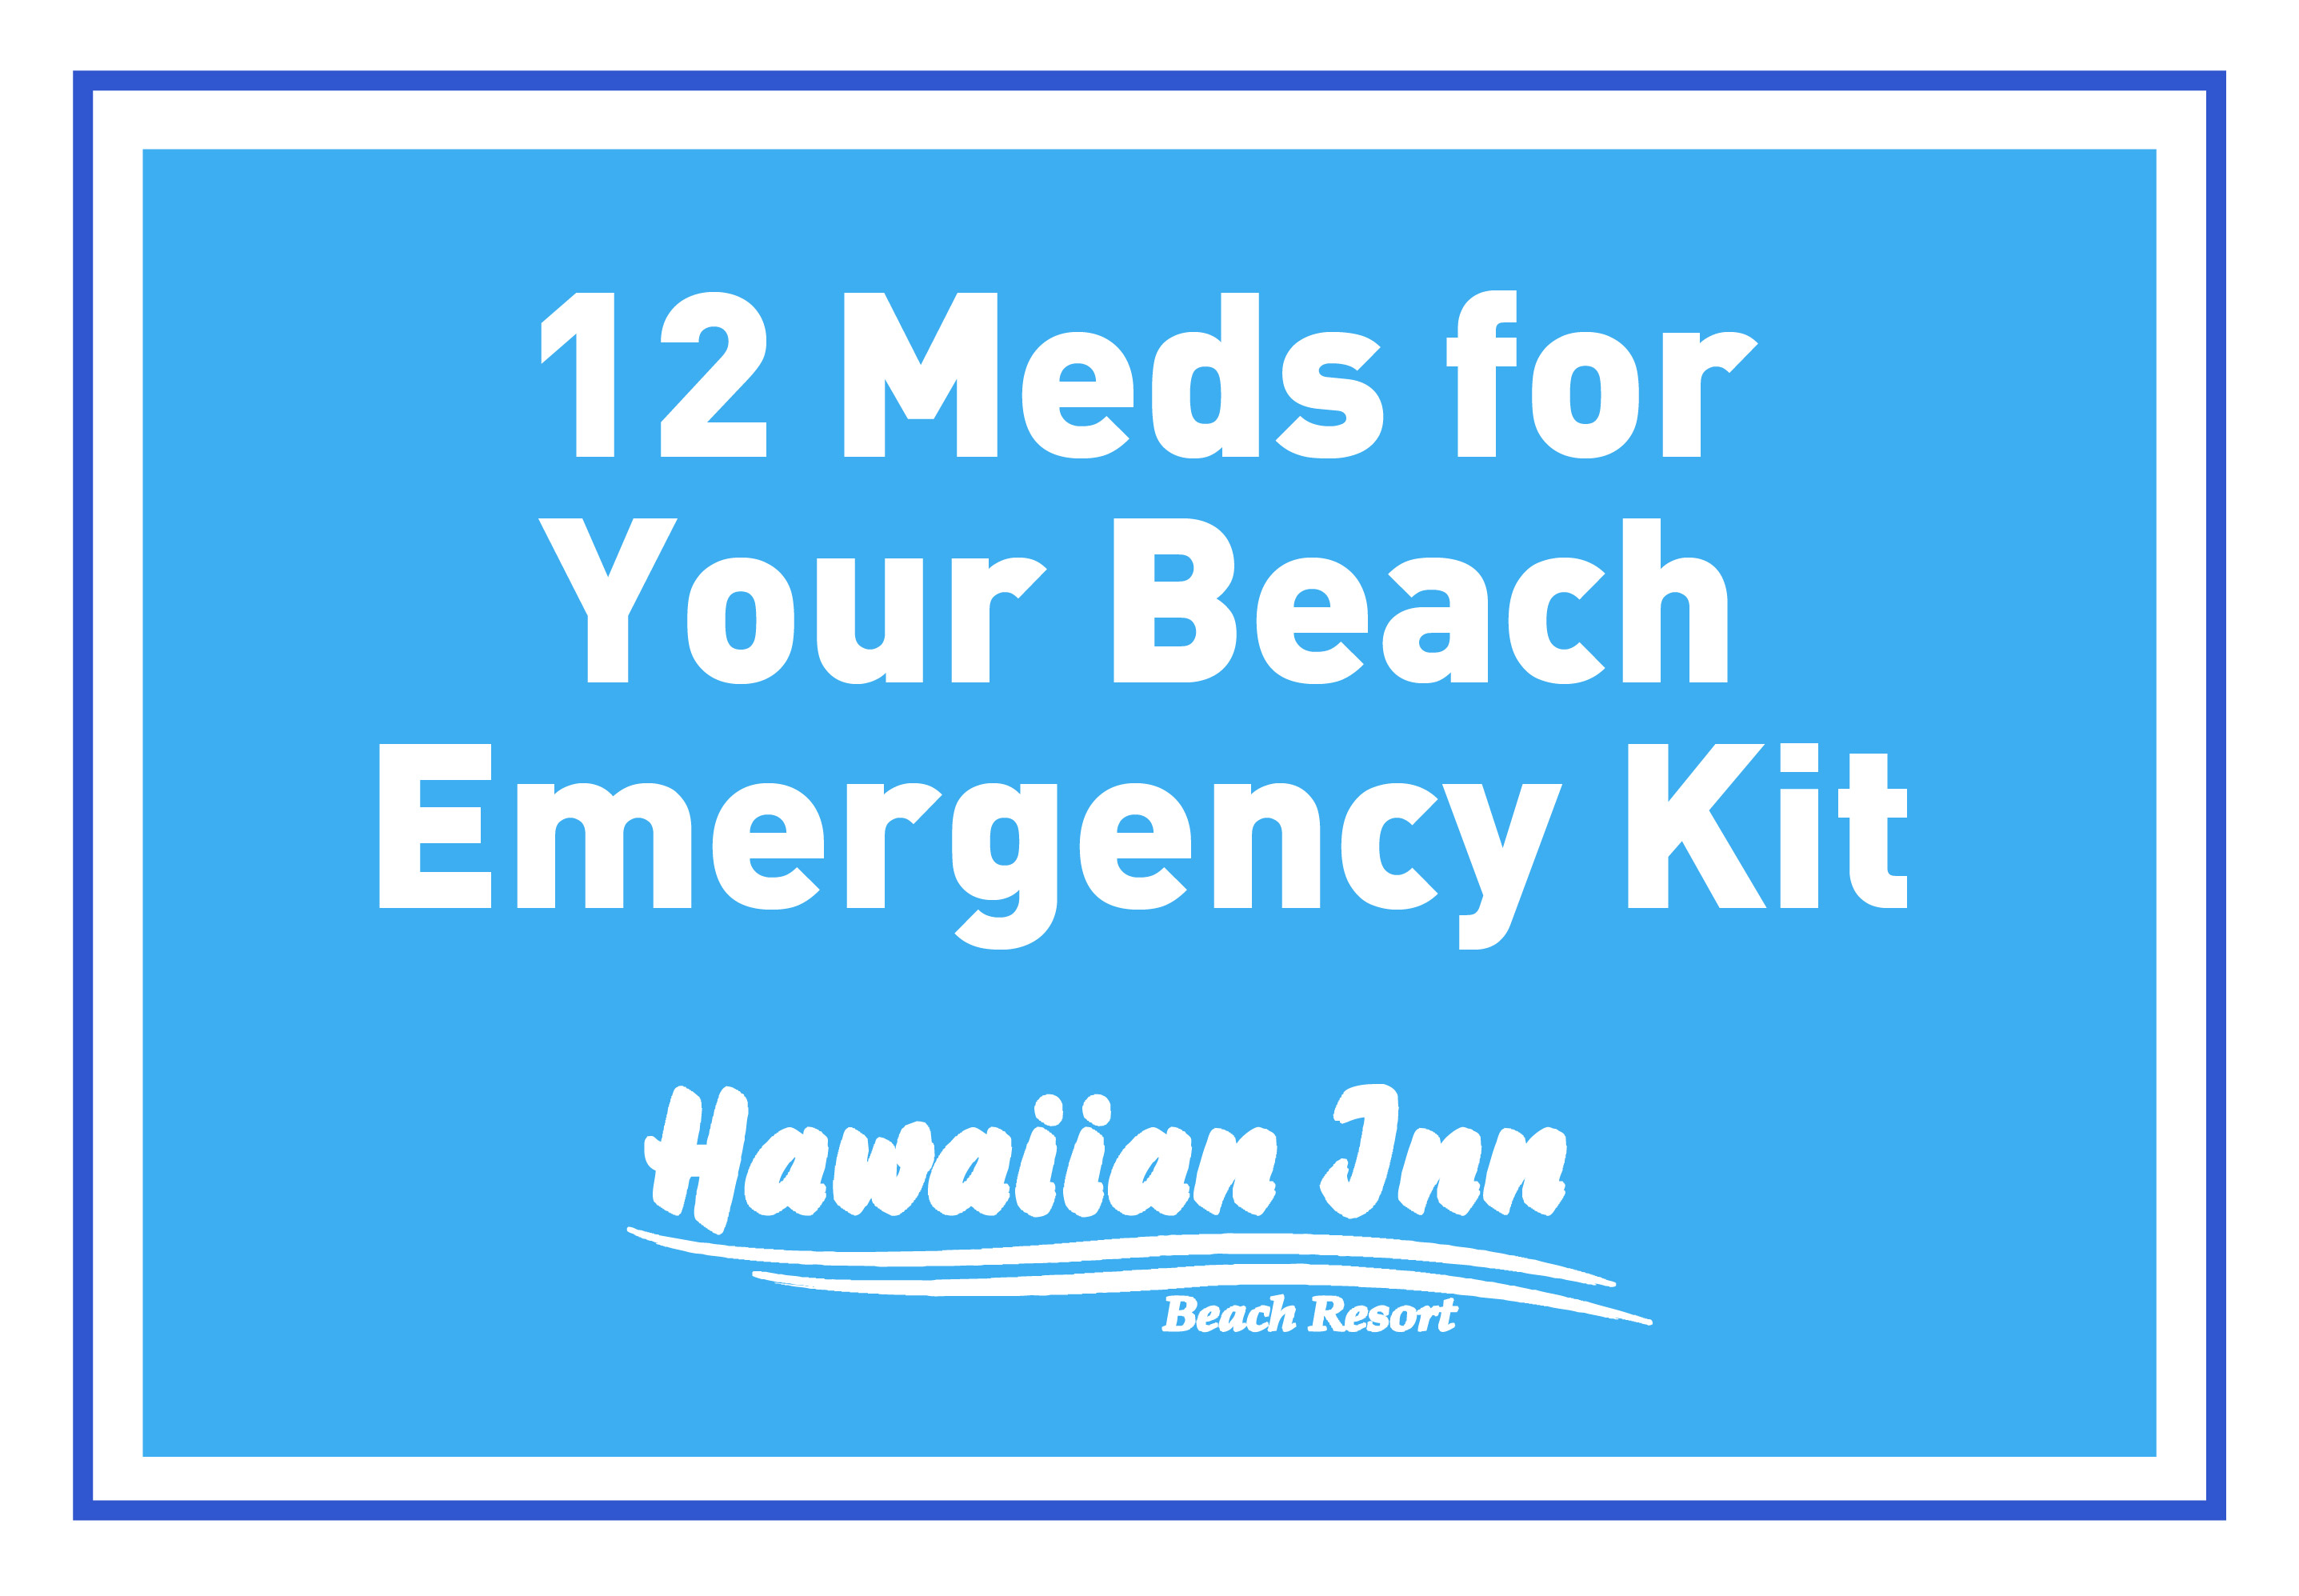 12 Meds for Your Beach Emergency Kit